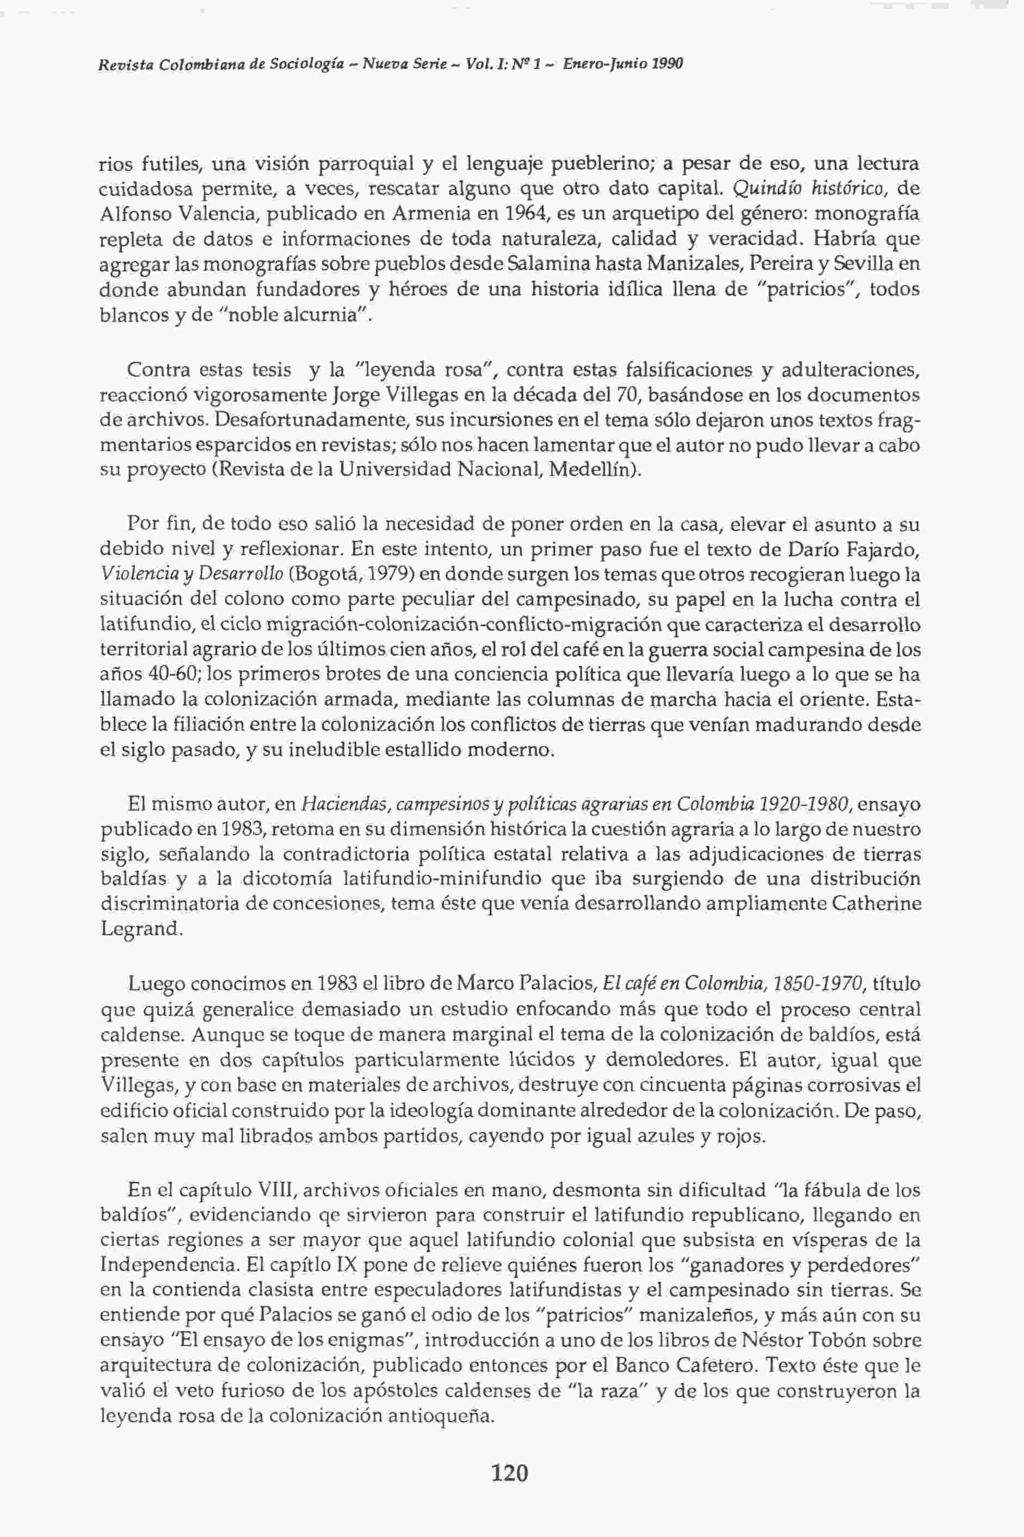 Revista Colombiana de Sociología - Nueva Serie - Vol.